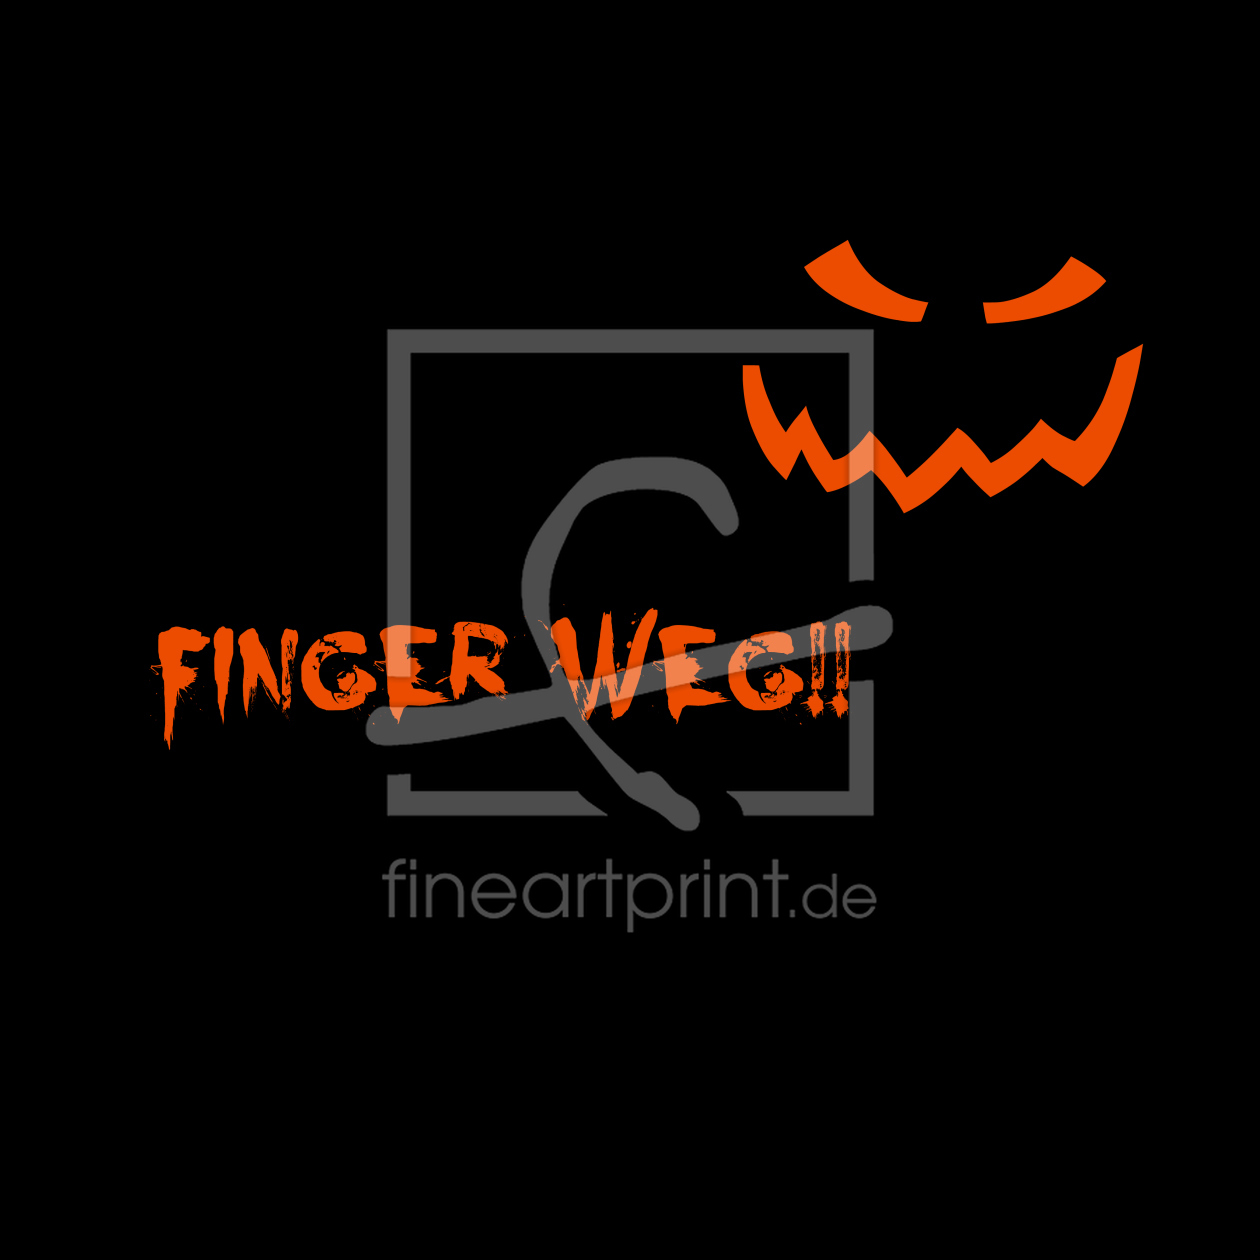 Bild-Nr.: 11279184 Finger weg!! Gestaltungsvariante erstellt von Heike Hultsch